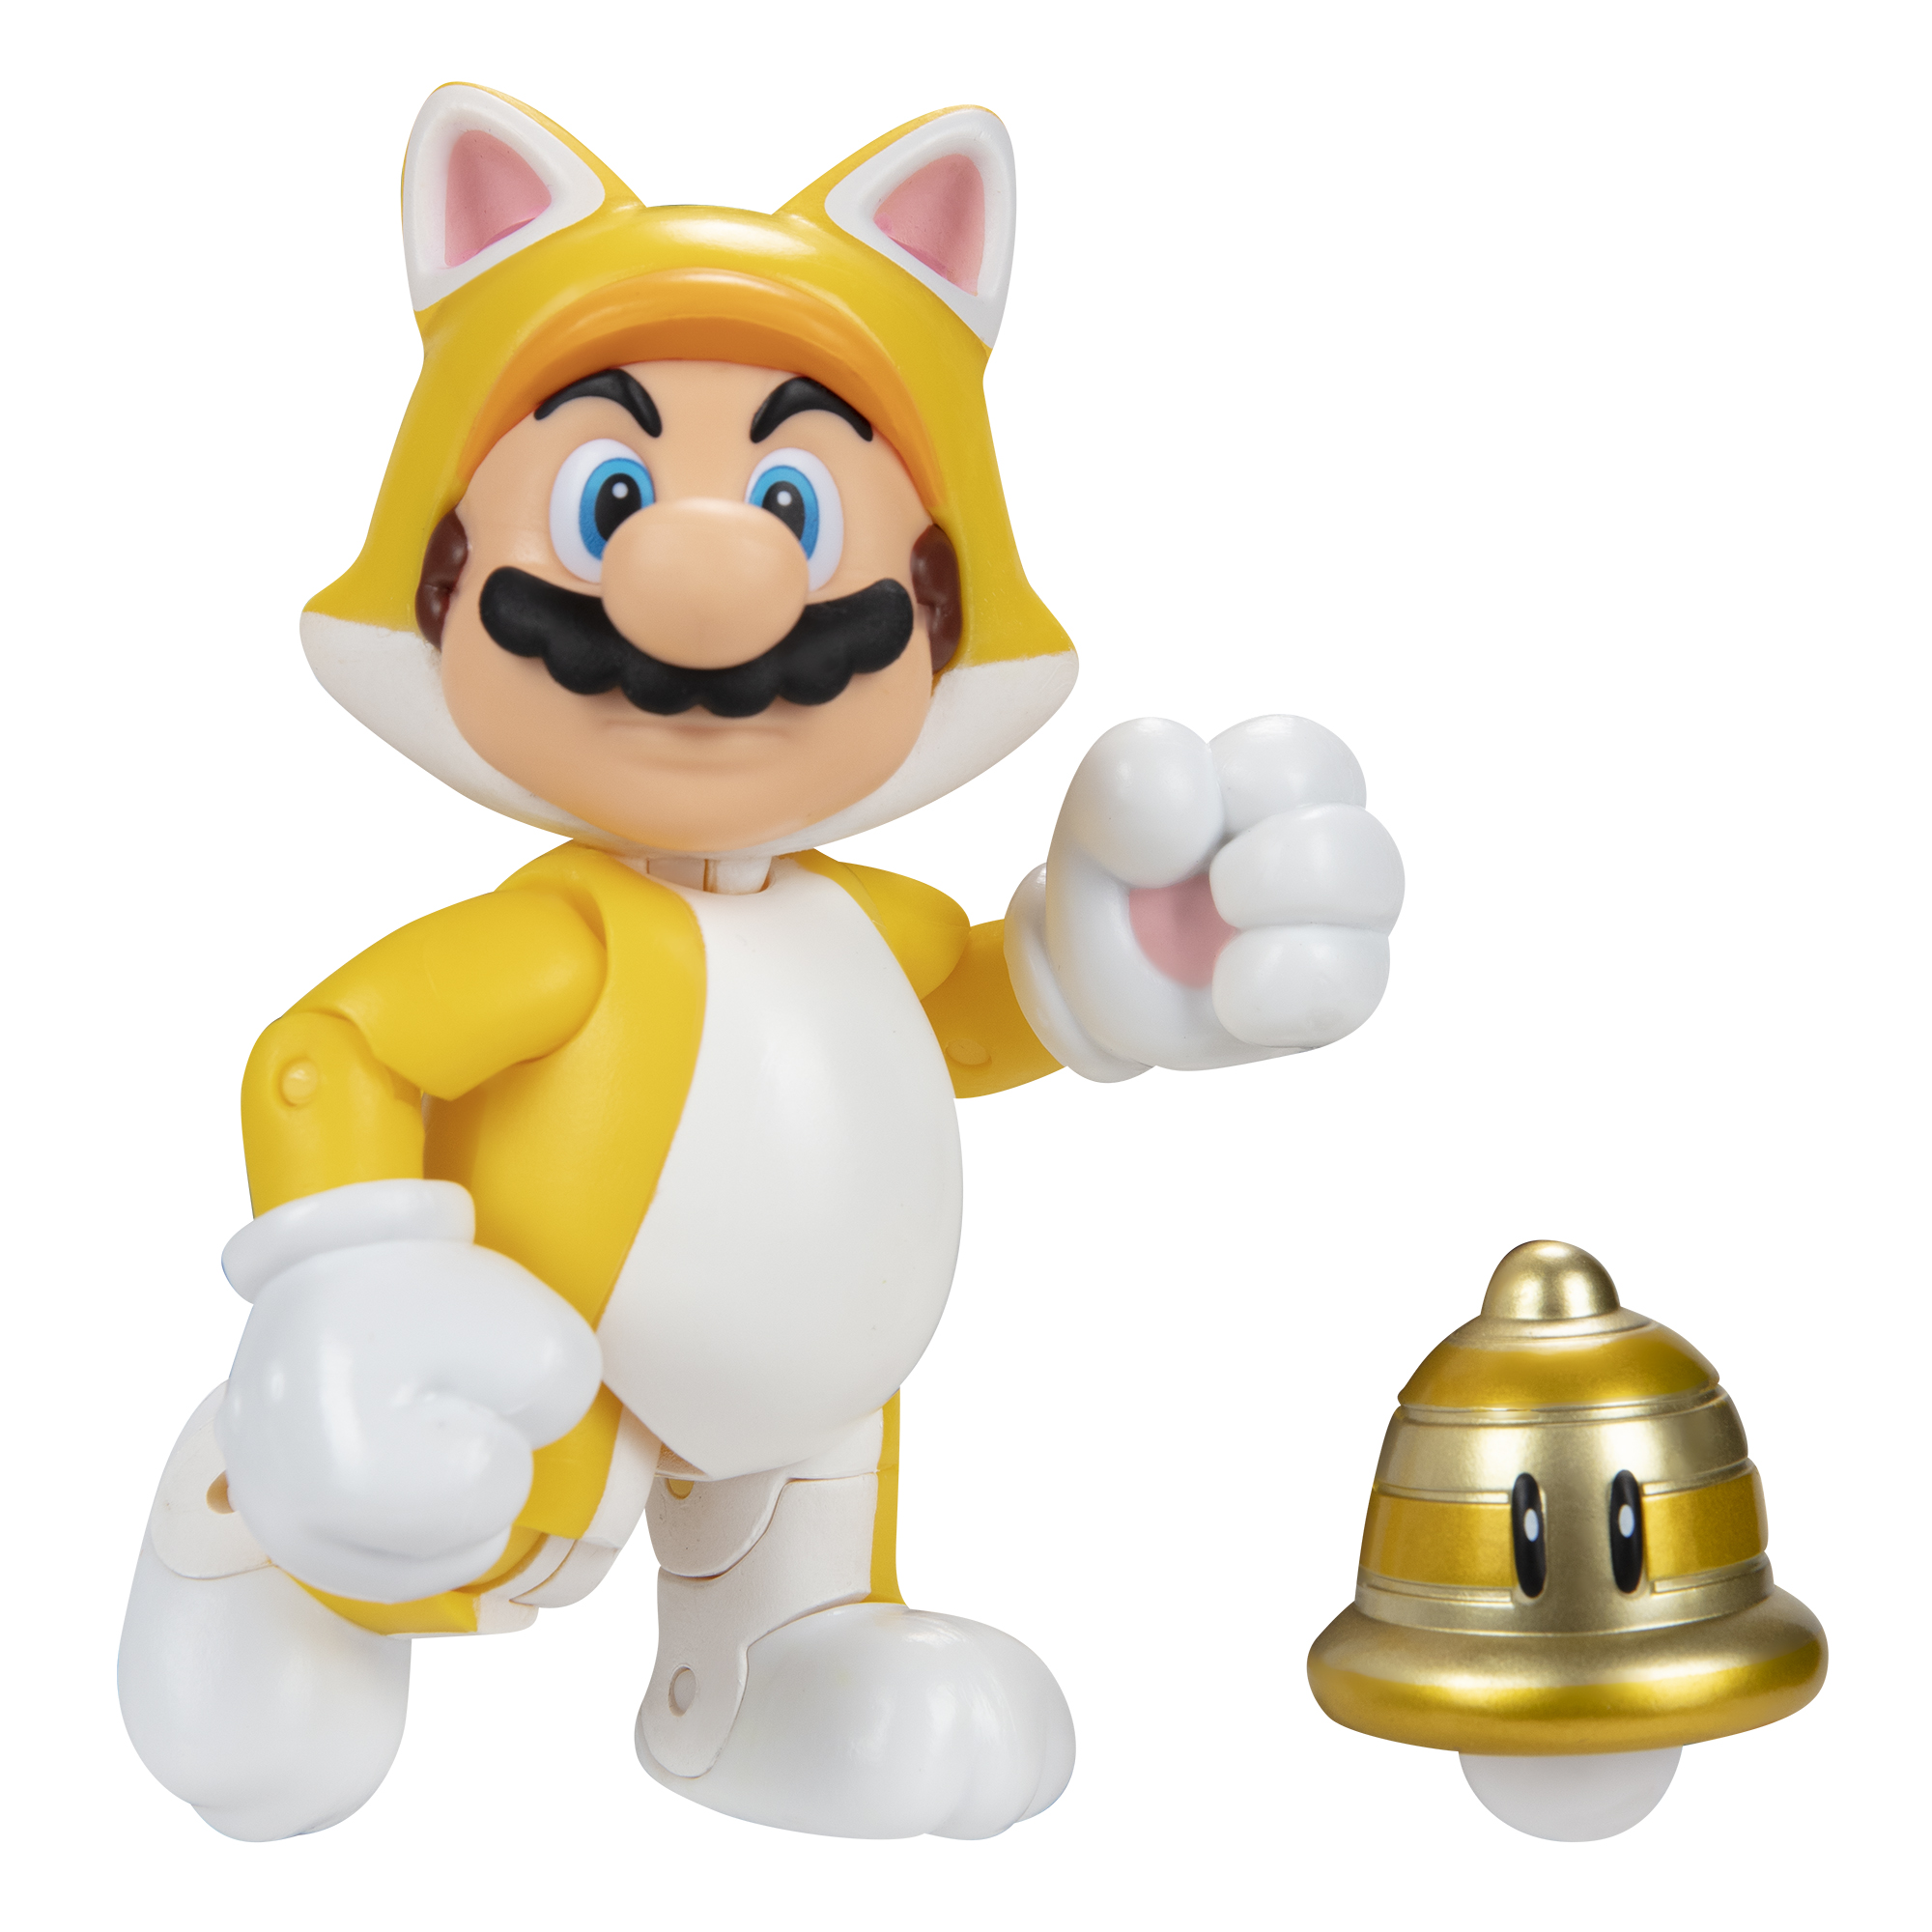 SUPER MARIO Nintendo Super Mario with Spielware Superball, Mario cm Cat Figur 10